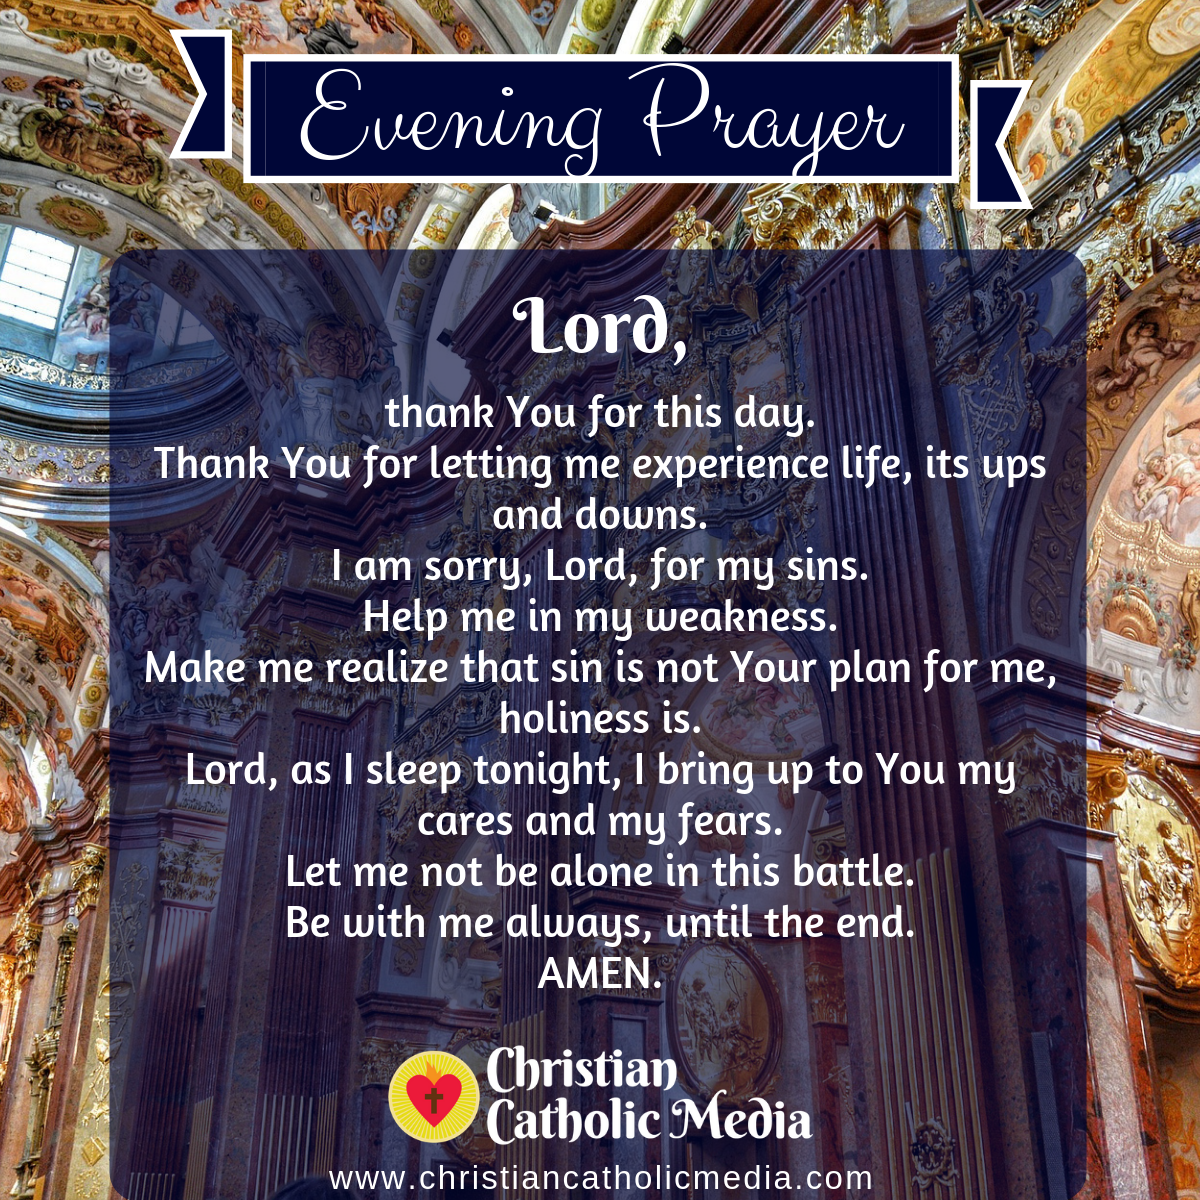 Evening Prayer Catholic Wednesday 2 12 2020 Christian Catholic Media